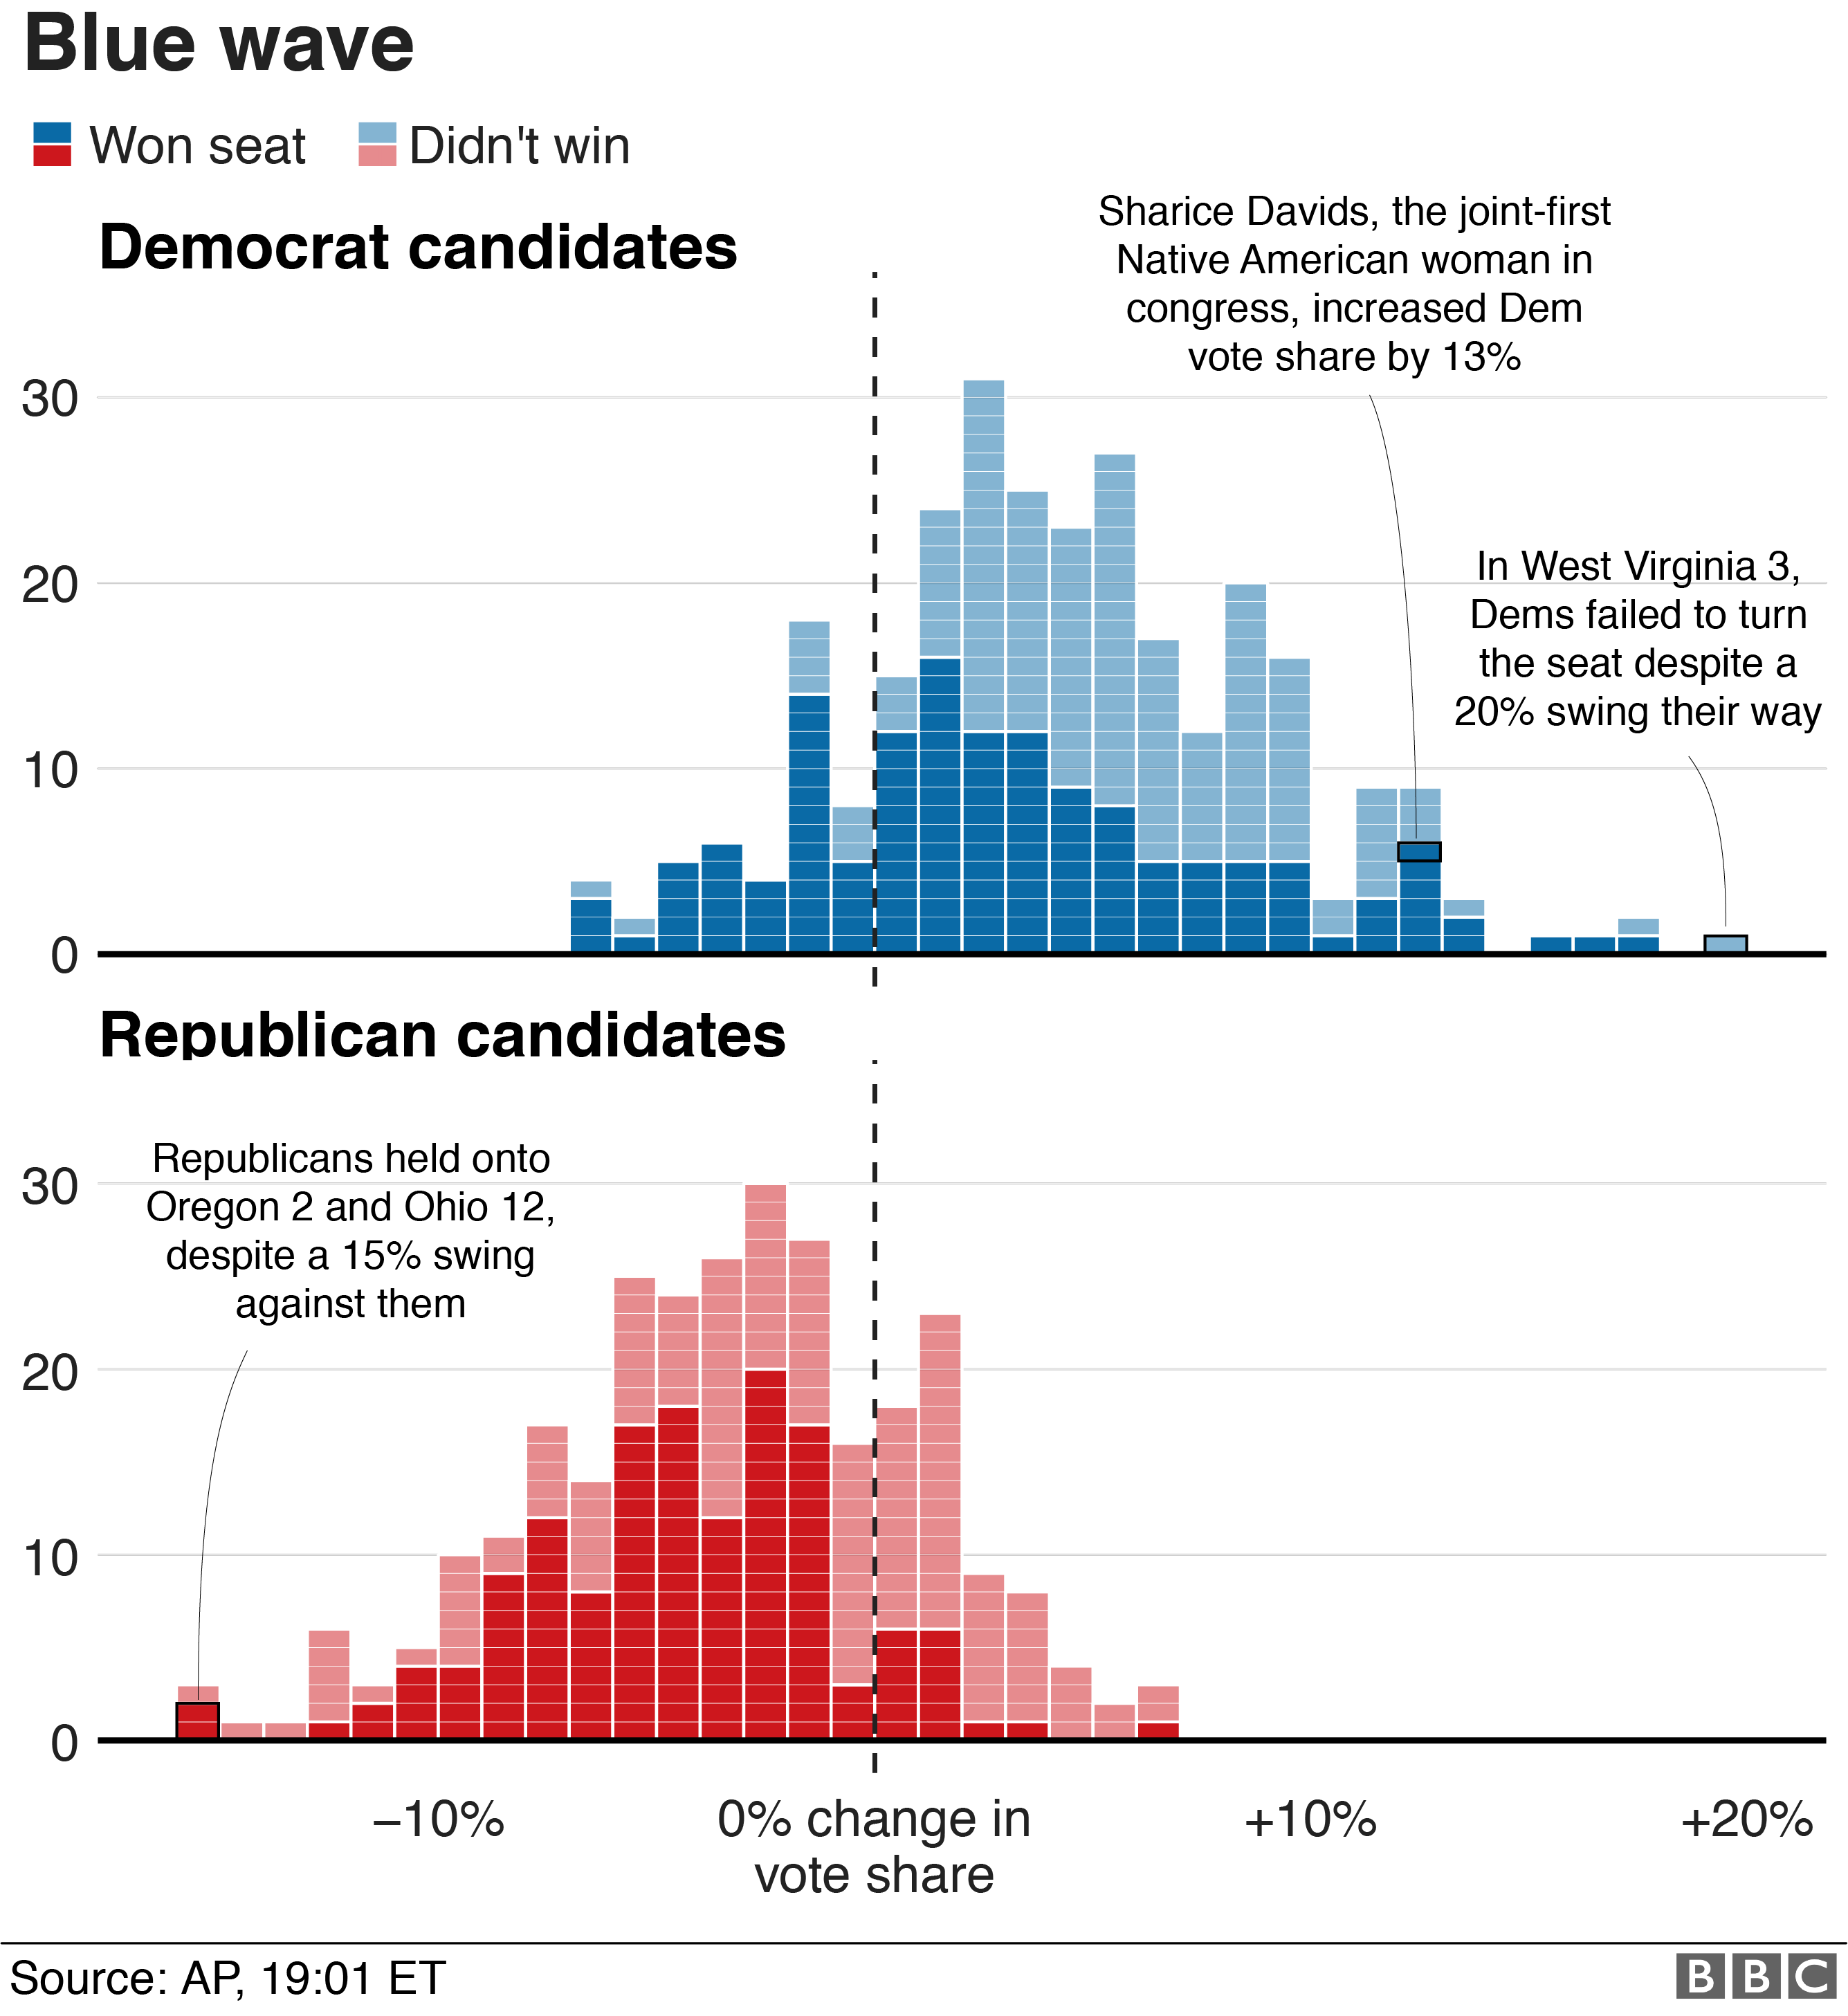 Демократы увеличили свою долю голосов в 239 округах. Республиканцы выросли в 67